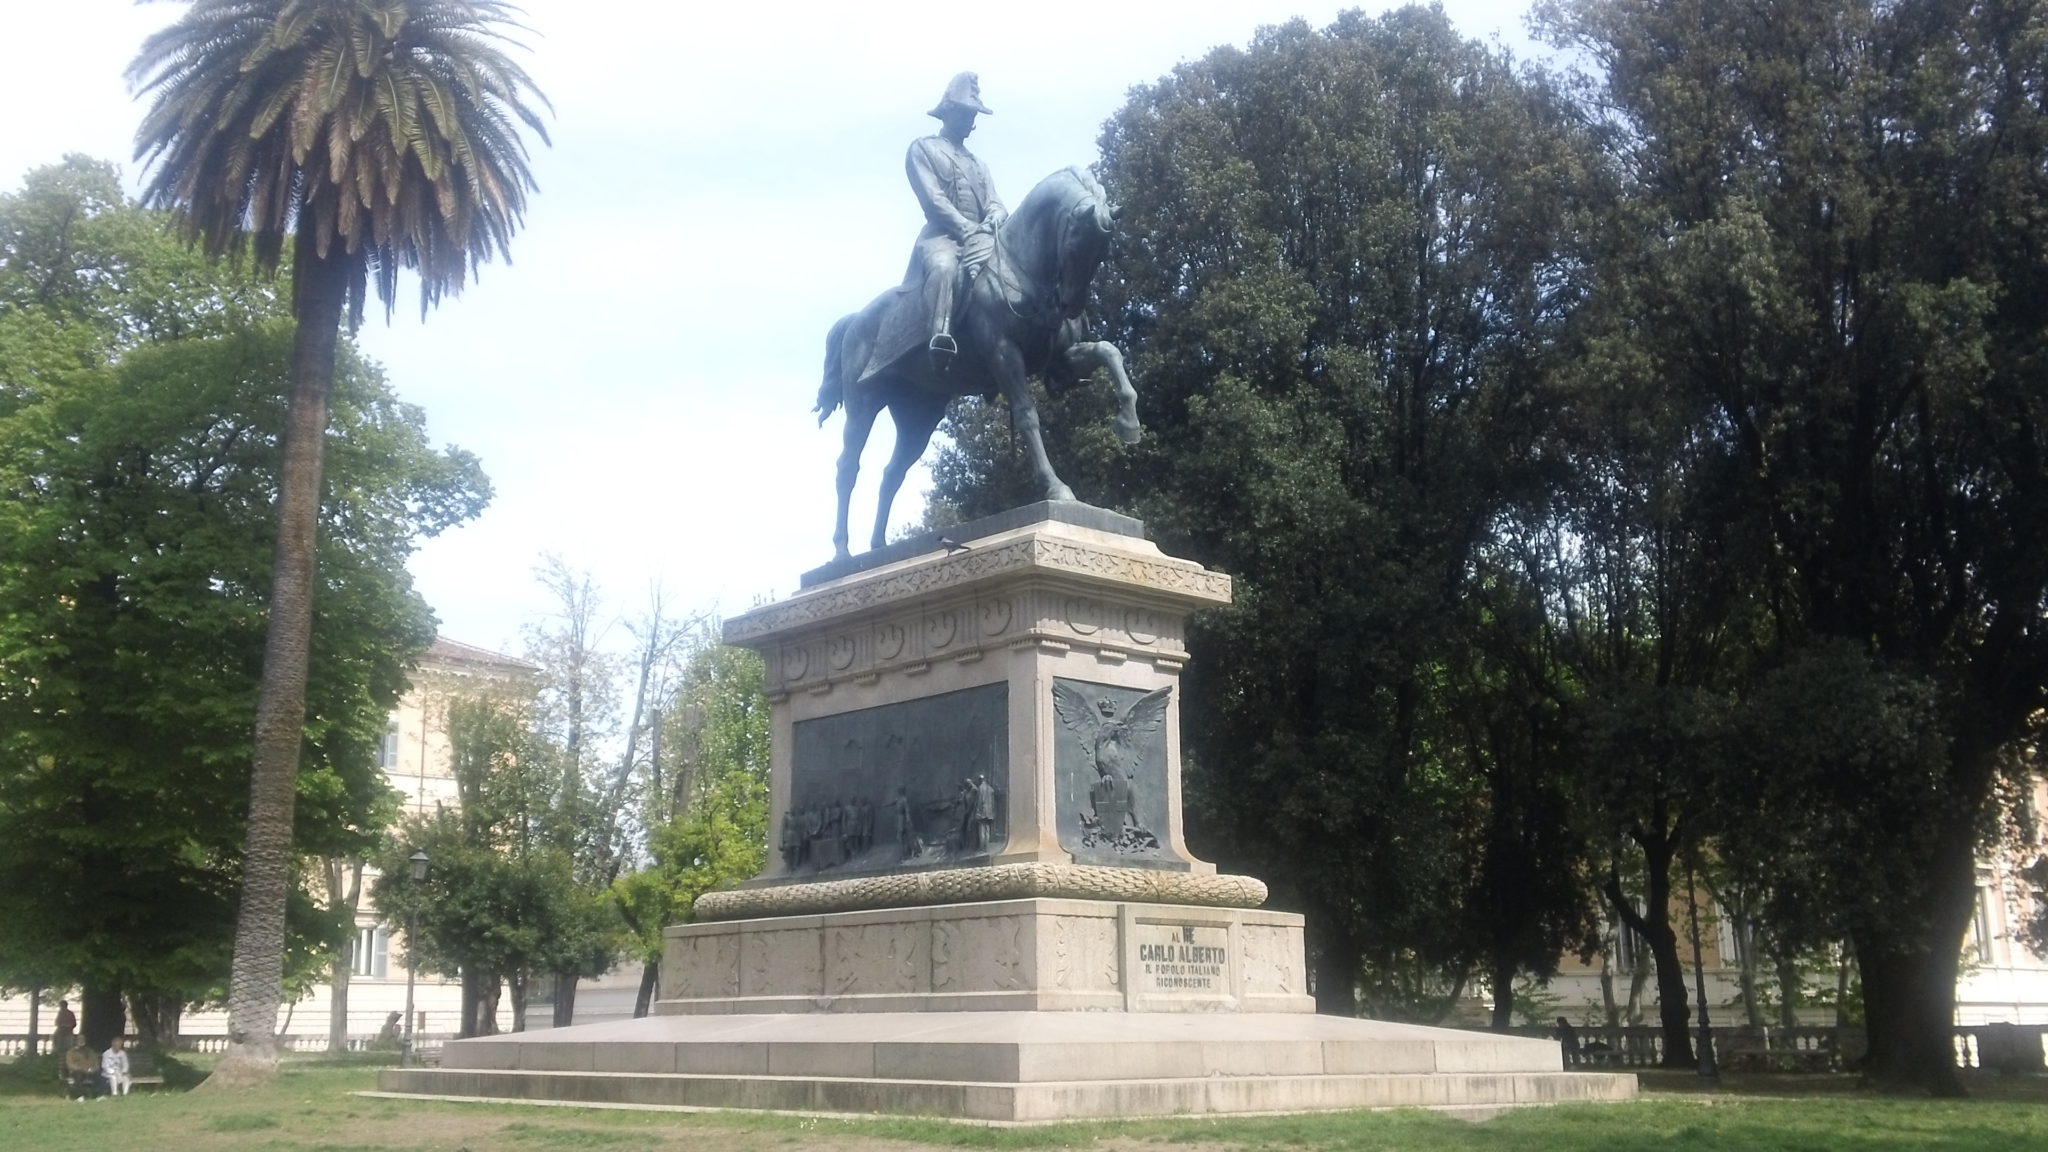 Statue in Rome